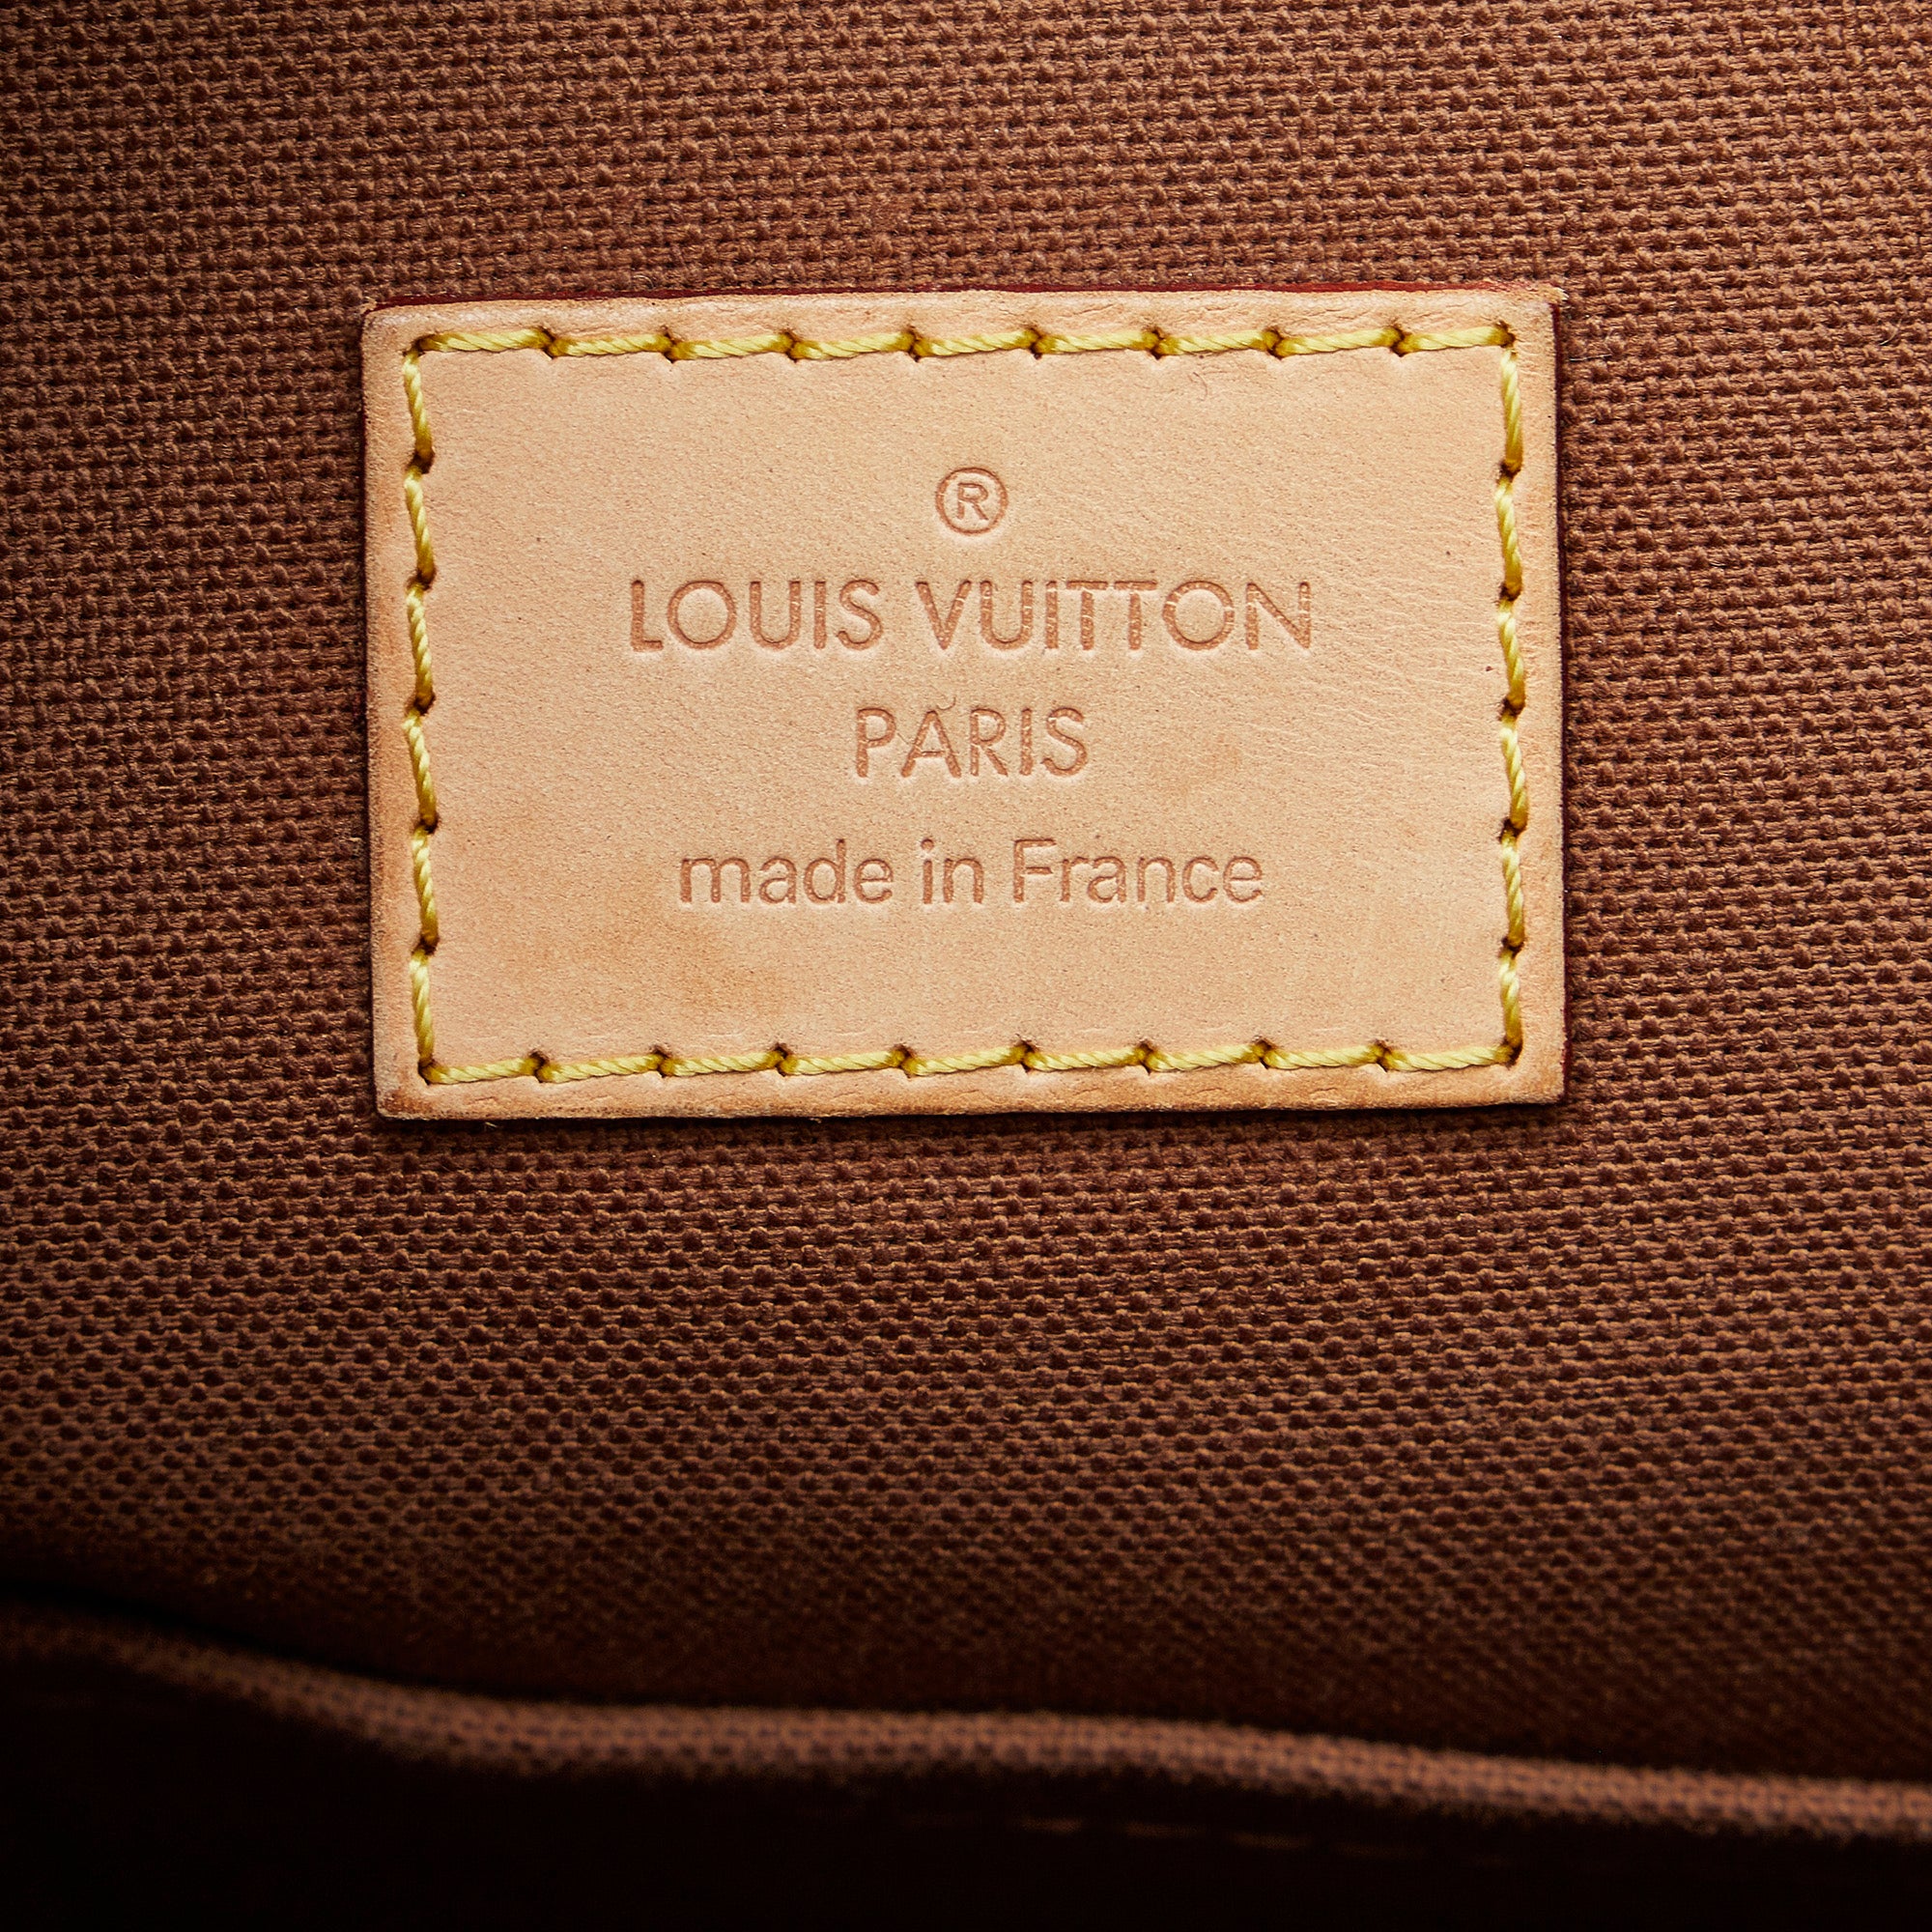 Odeon mm - is it worth it ? : r/Louisvuitton